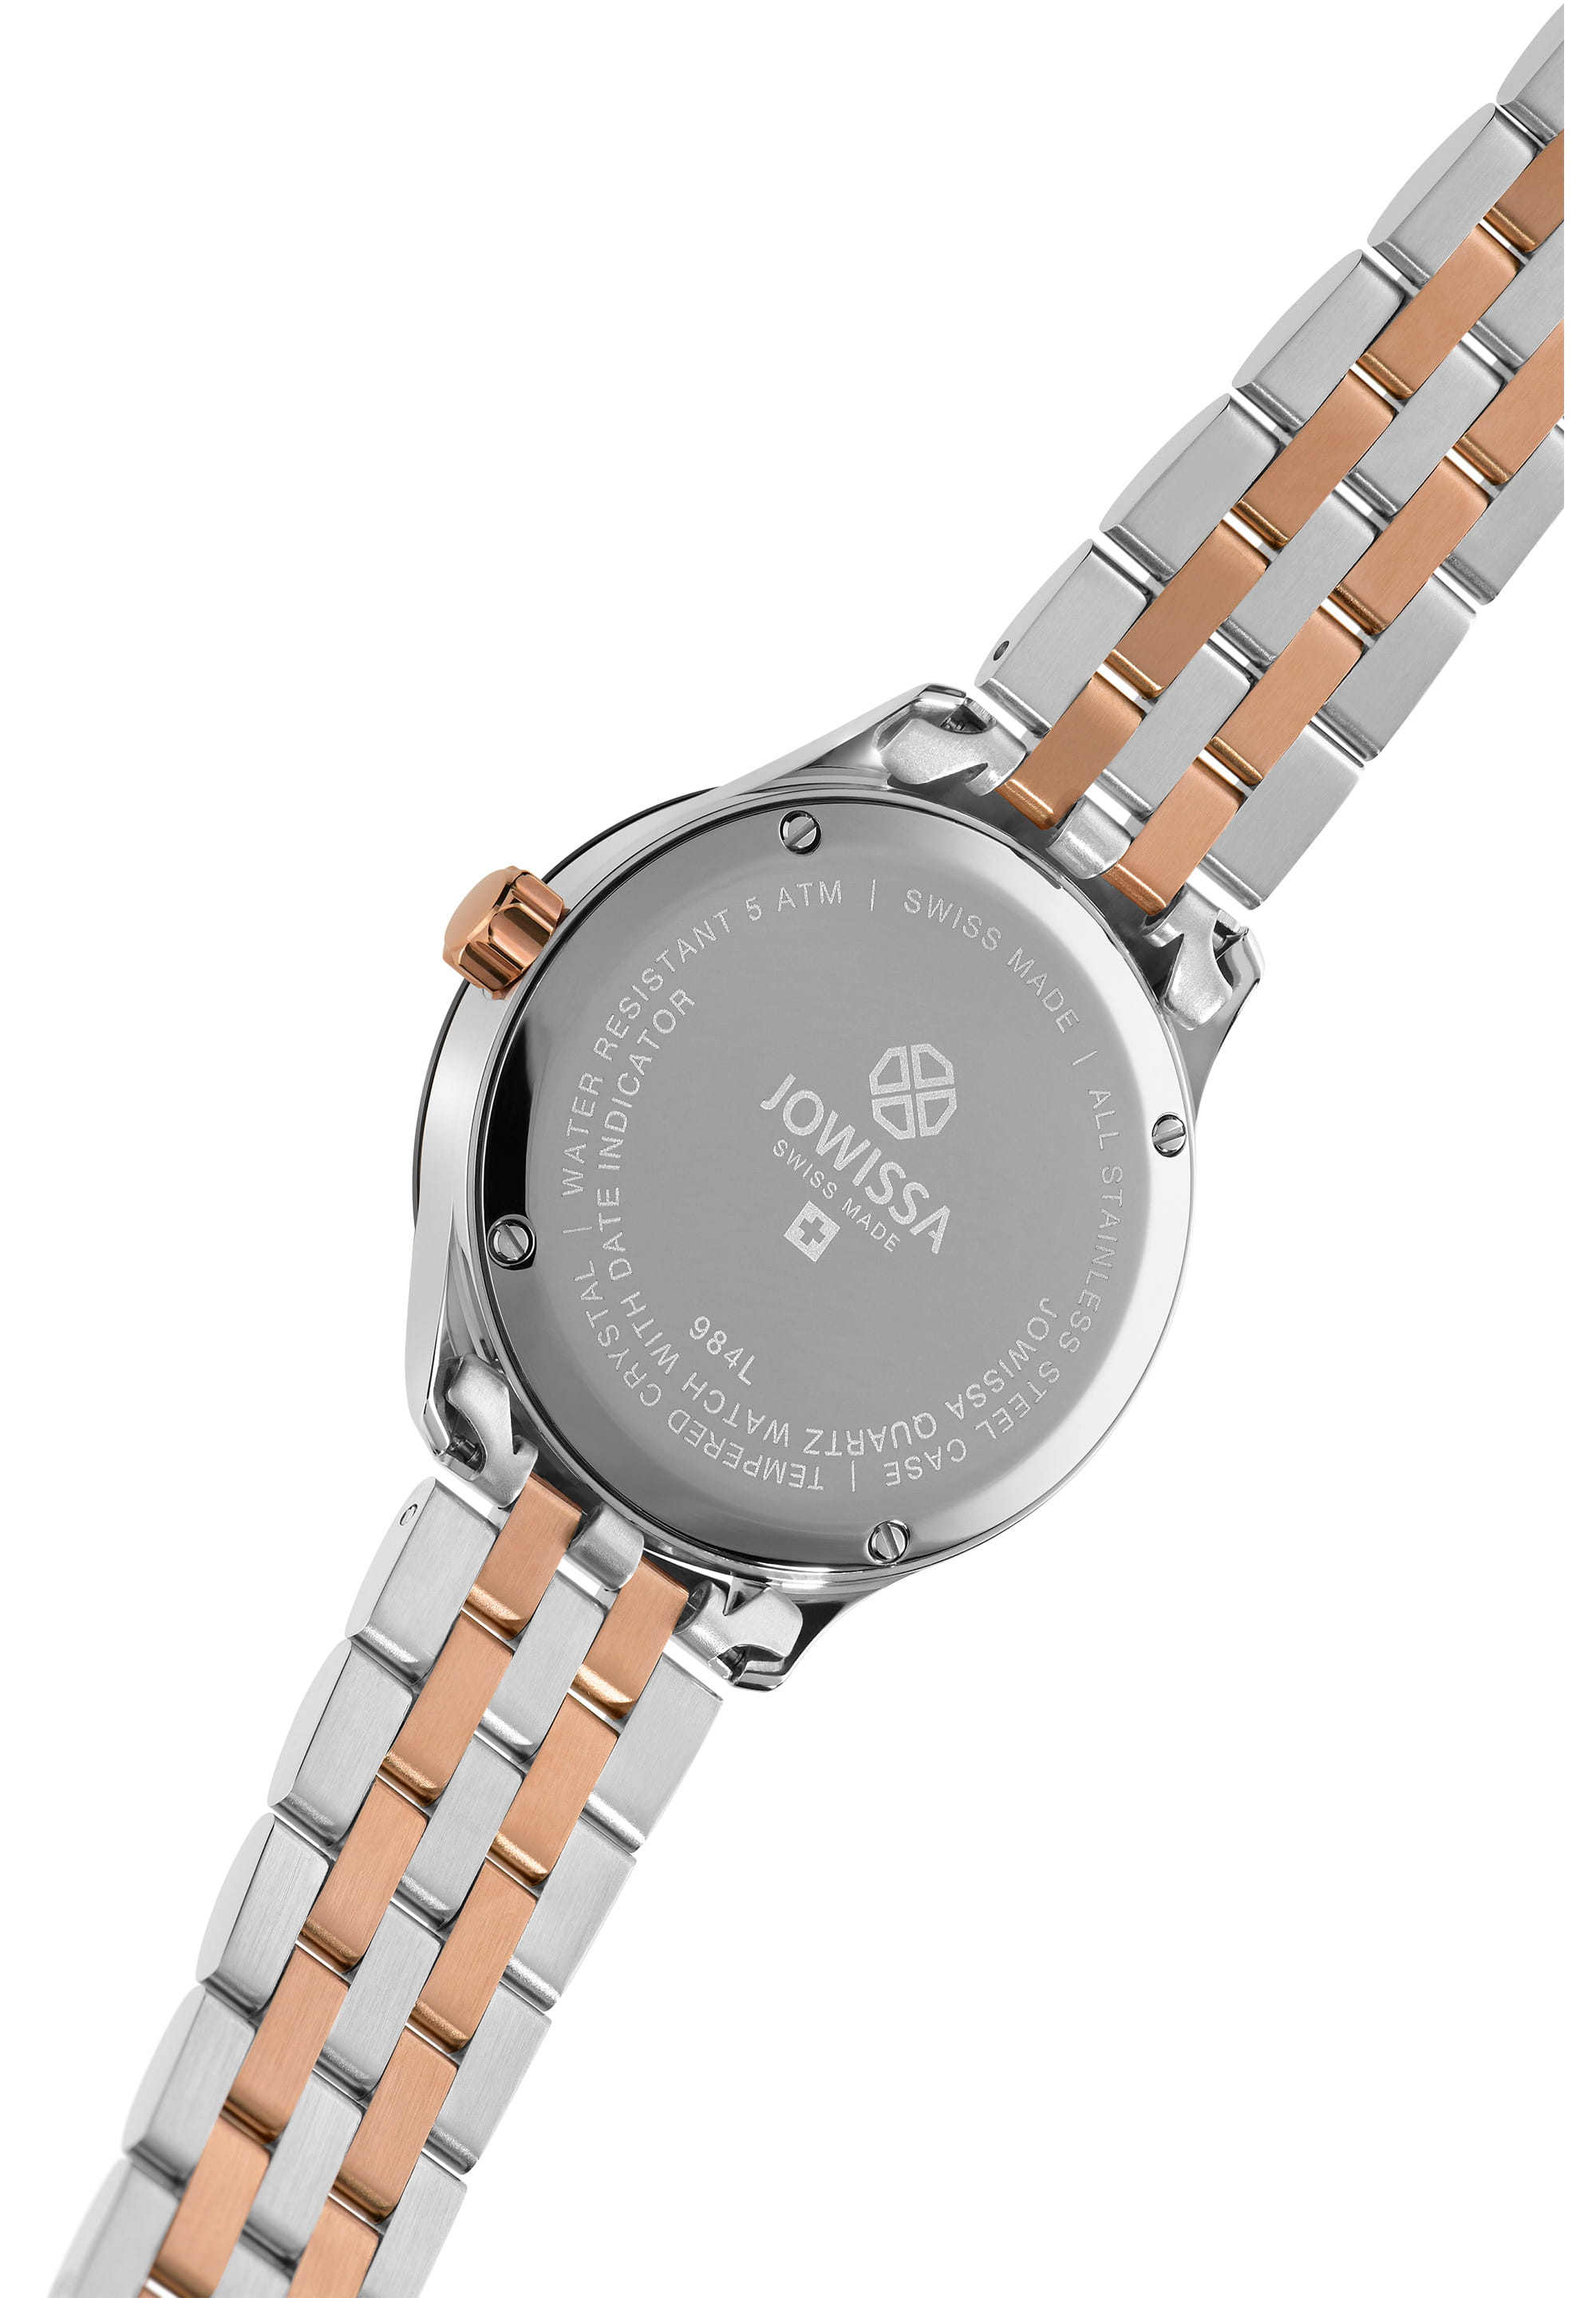 Tiro Swiss Made Watch J4.231.M